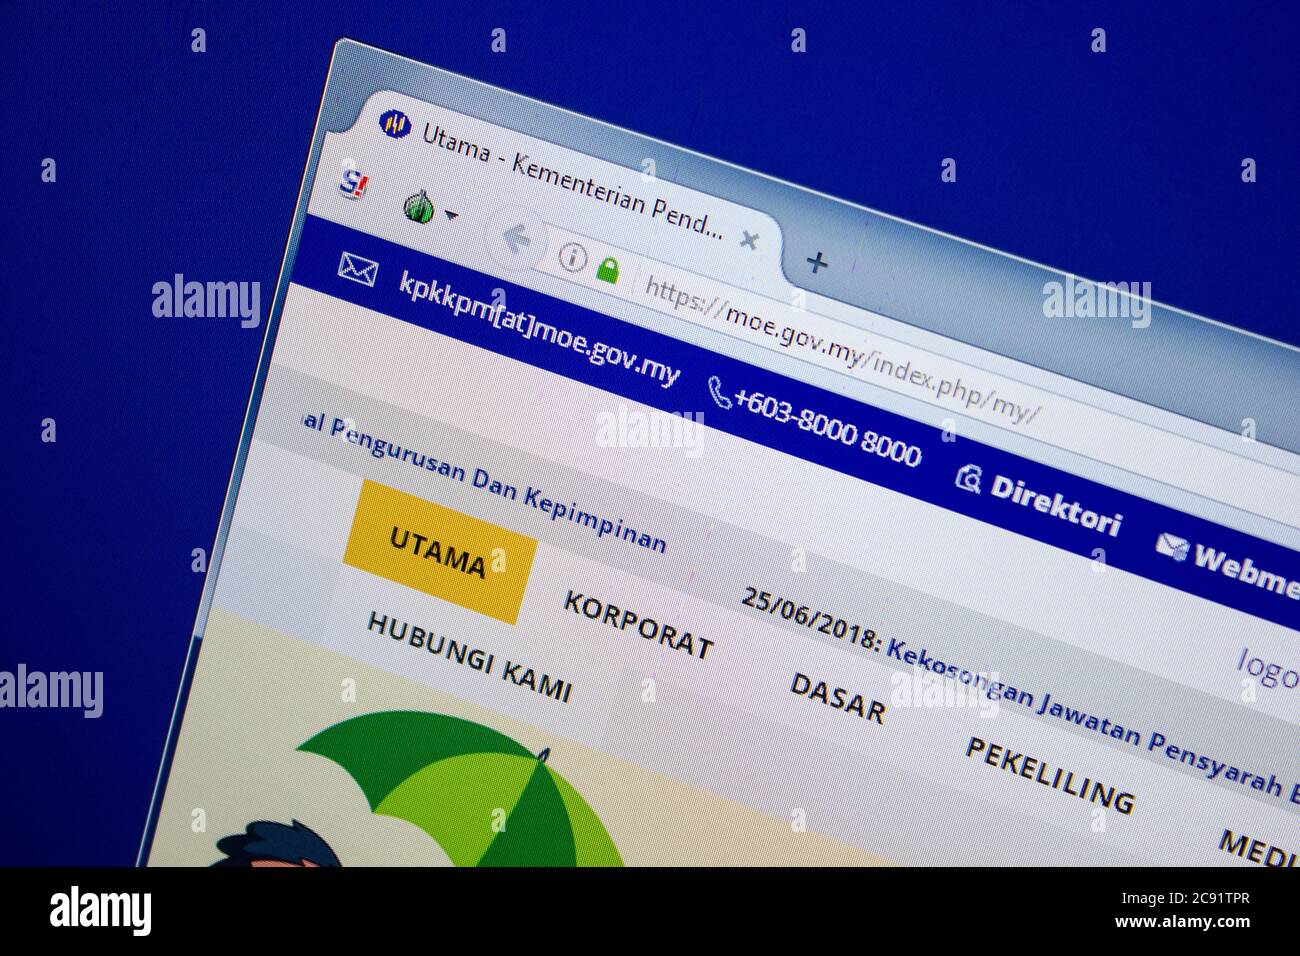 Ryazan, Russia - June 26, 2018: Homepage of Moe website on the display of PC. URL - Moe.gov.my Stock Photo